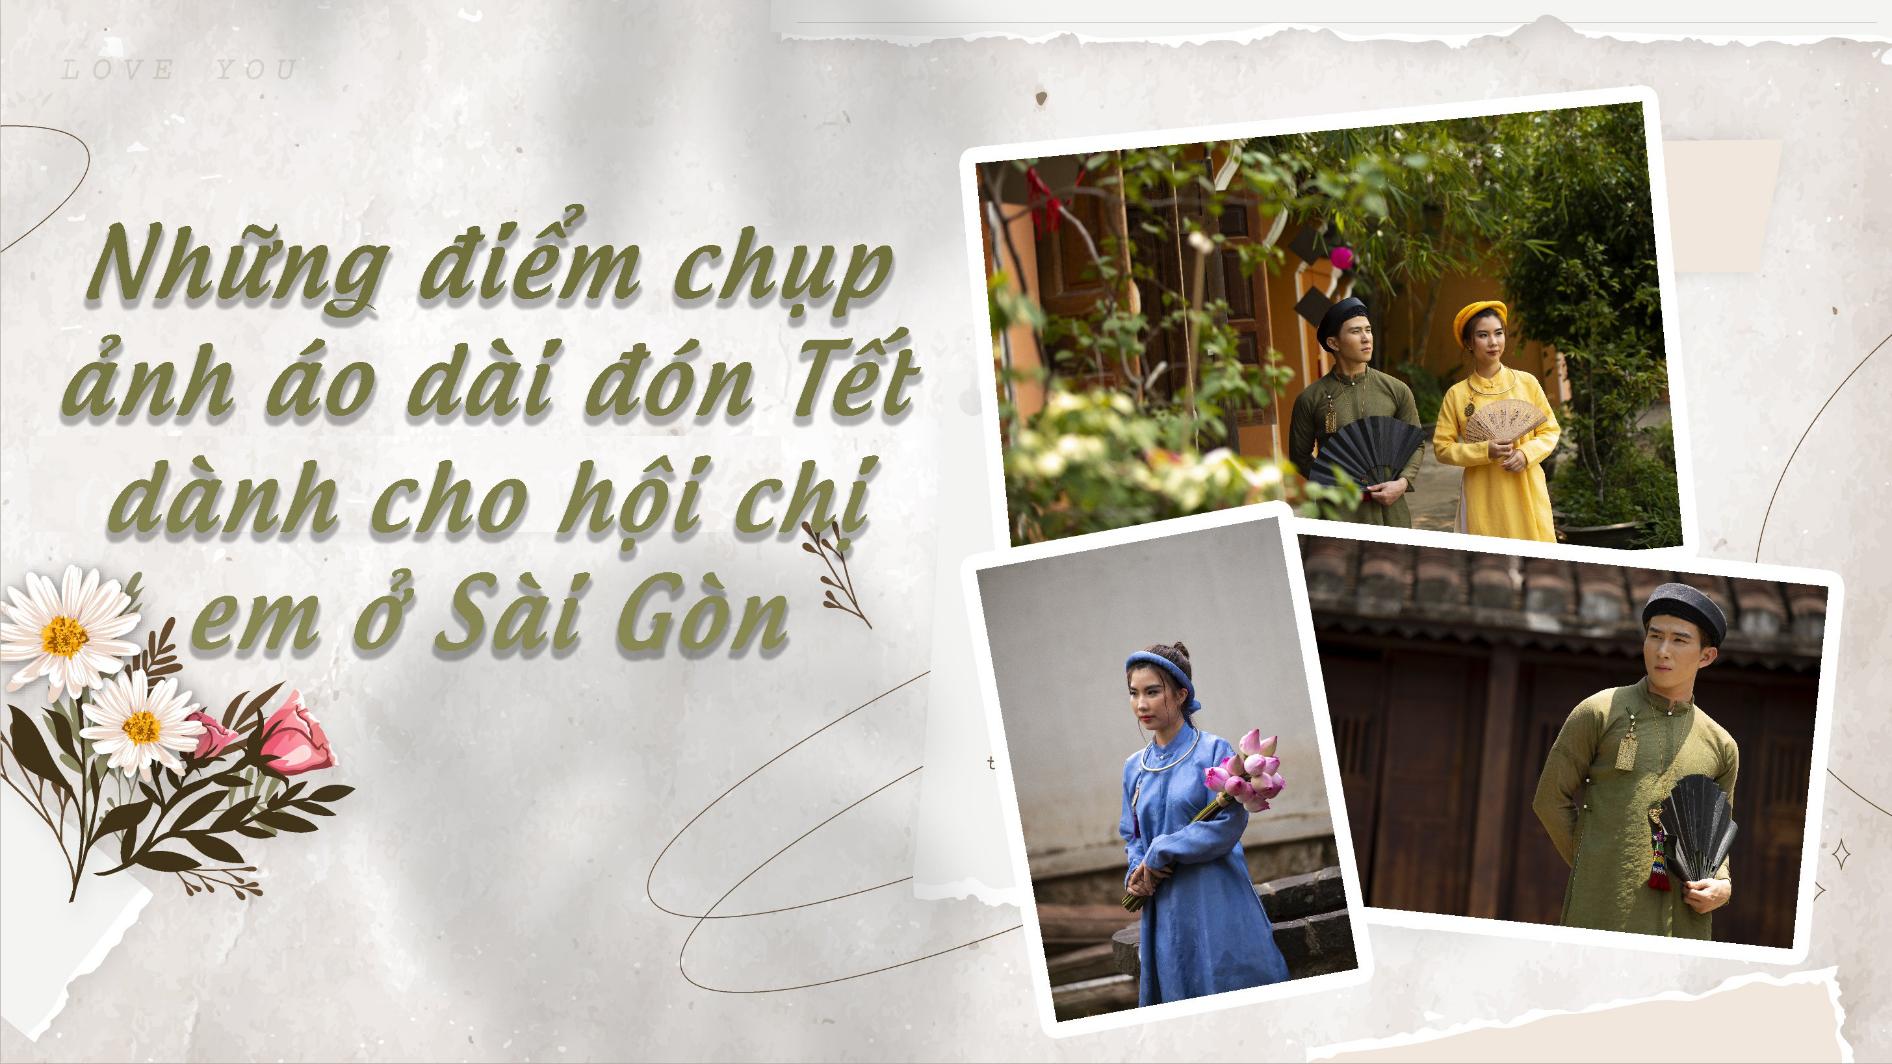 Những điểm chụp ảnh áo dài đón Tết dành cho hội chị em ở Sài Gòn